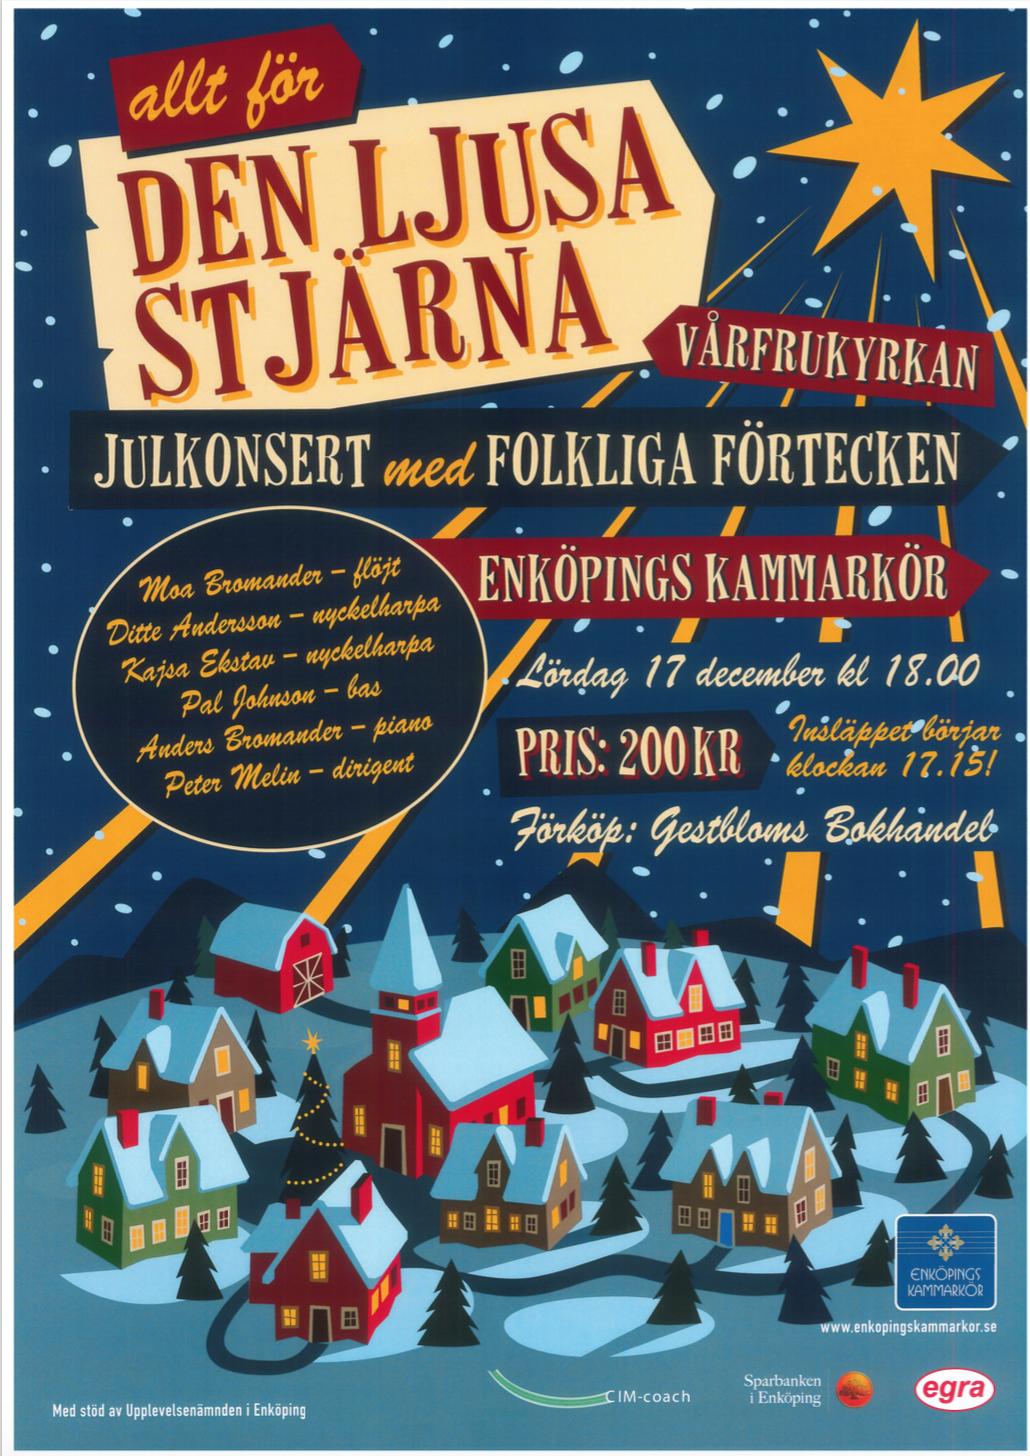 2016-affisch-allt-for-den-ljusa-stjarna-med-enkopings-kammarkor